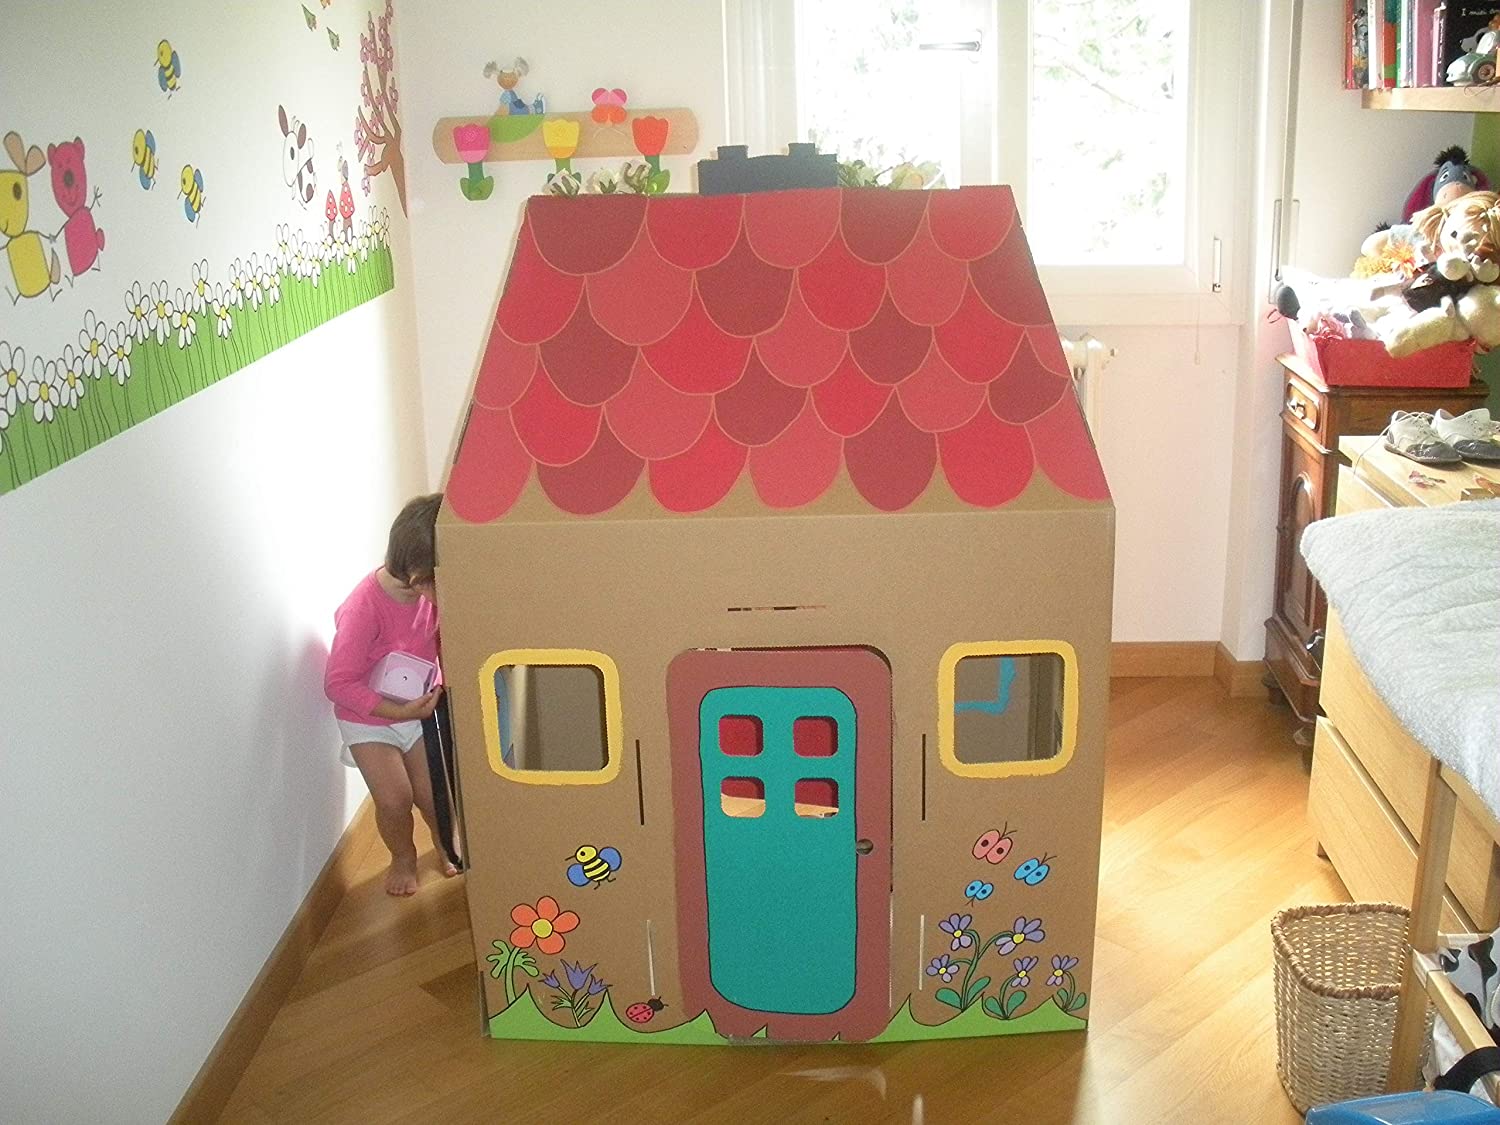 Домик из картона для детей своими руками поделка из: DIY Миниатюрный домик своими руками / Поделка из картона